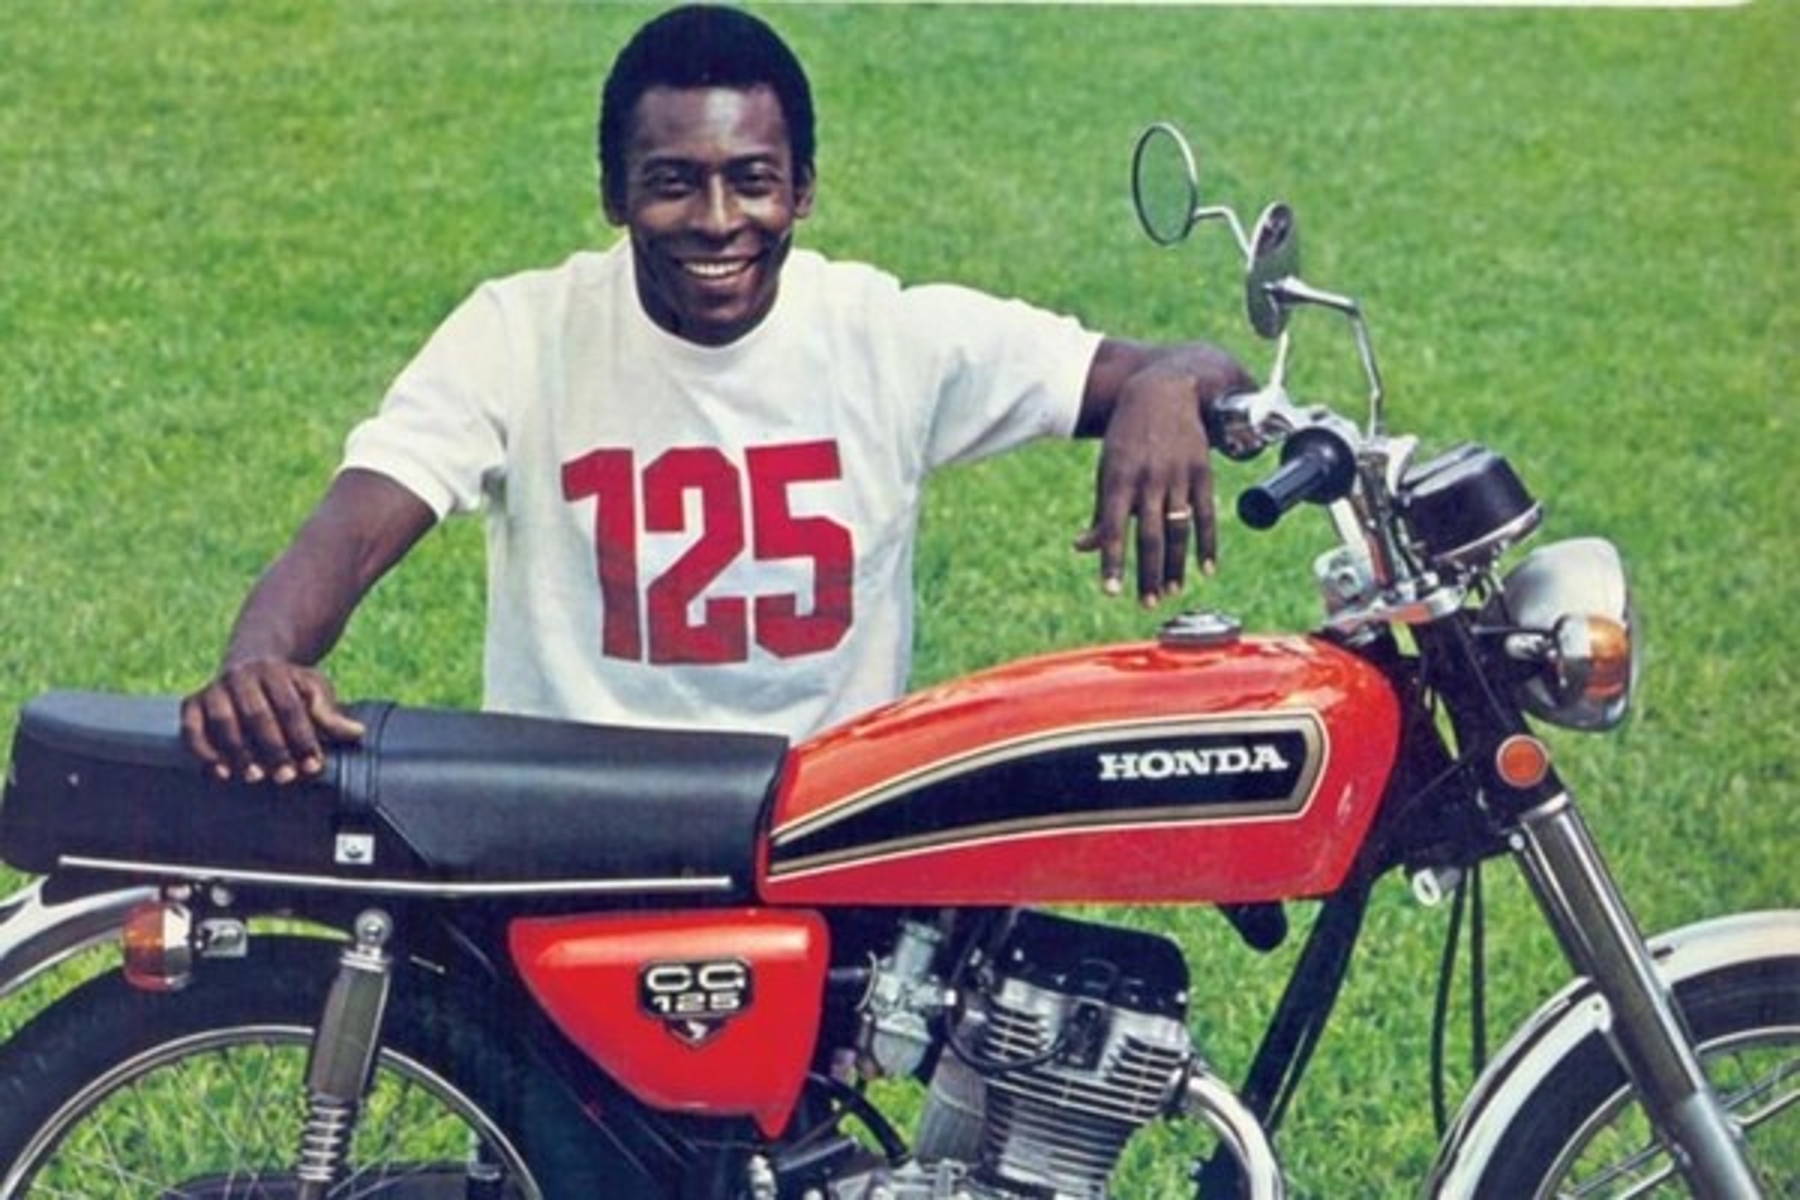 Como garoto propaganda da Honda CG 125, Pelé ajudou a impulsionar as vendas do modelo